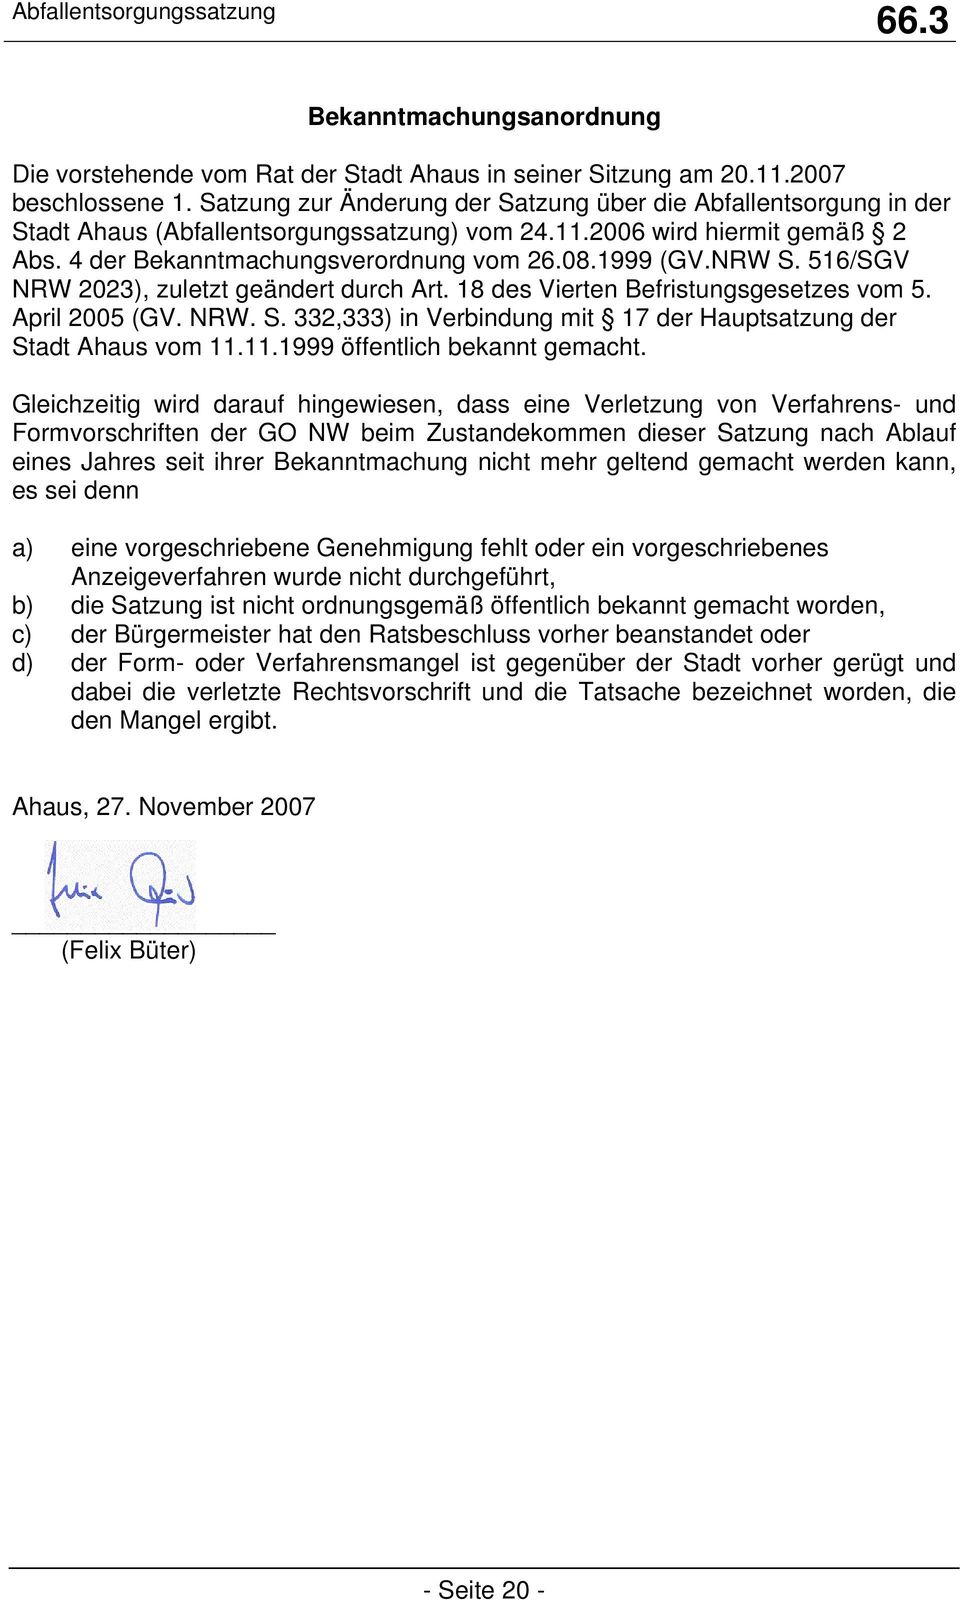 NRW S. 516/SGV NRW 2023), zuletzt geändert durch Art. 18 des Vierten Befristungsgesetzes vom 5. April 2005 (GV. NRW. S. 332,333) in Verbindung mit 17 der Hauptsatzung der Stadt Ahaus vom 11.